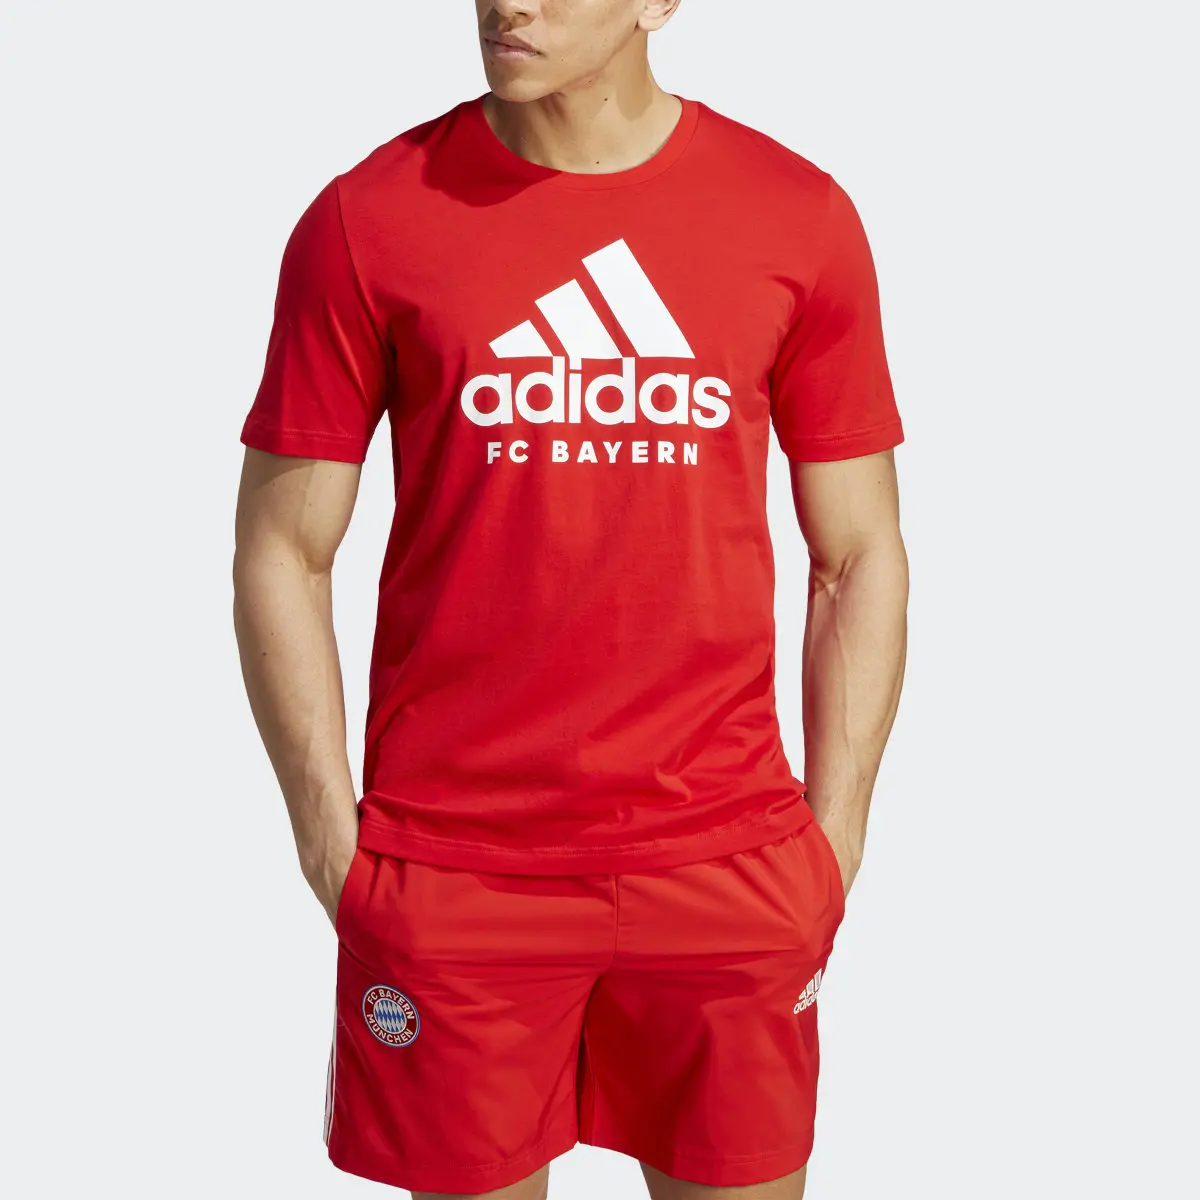 Adidas T-shirt DNA do FC Bayern München. 1